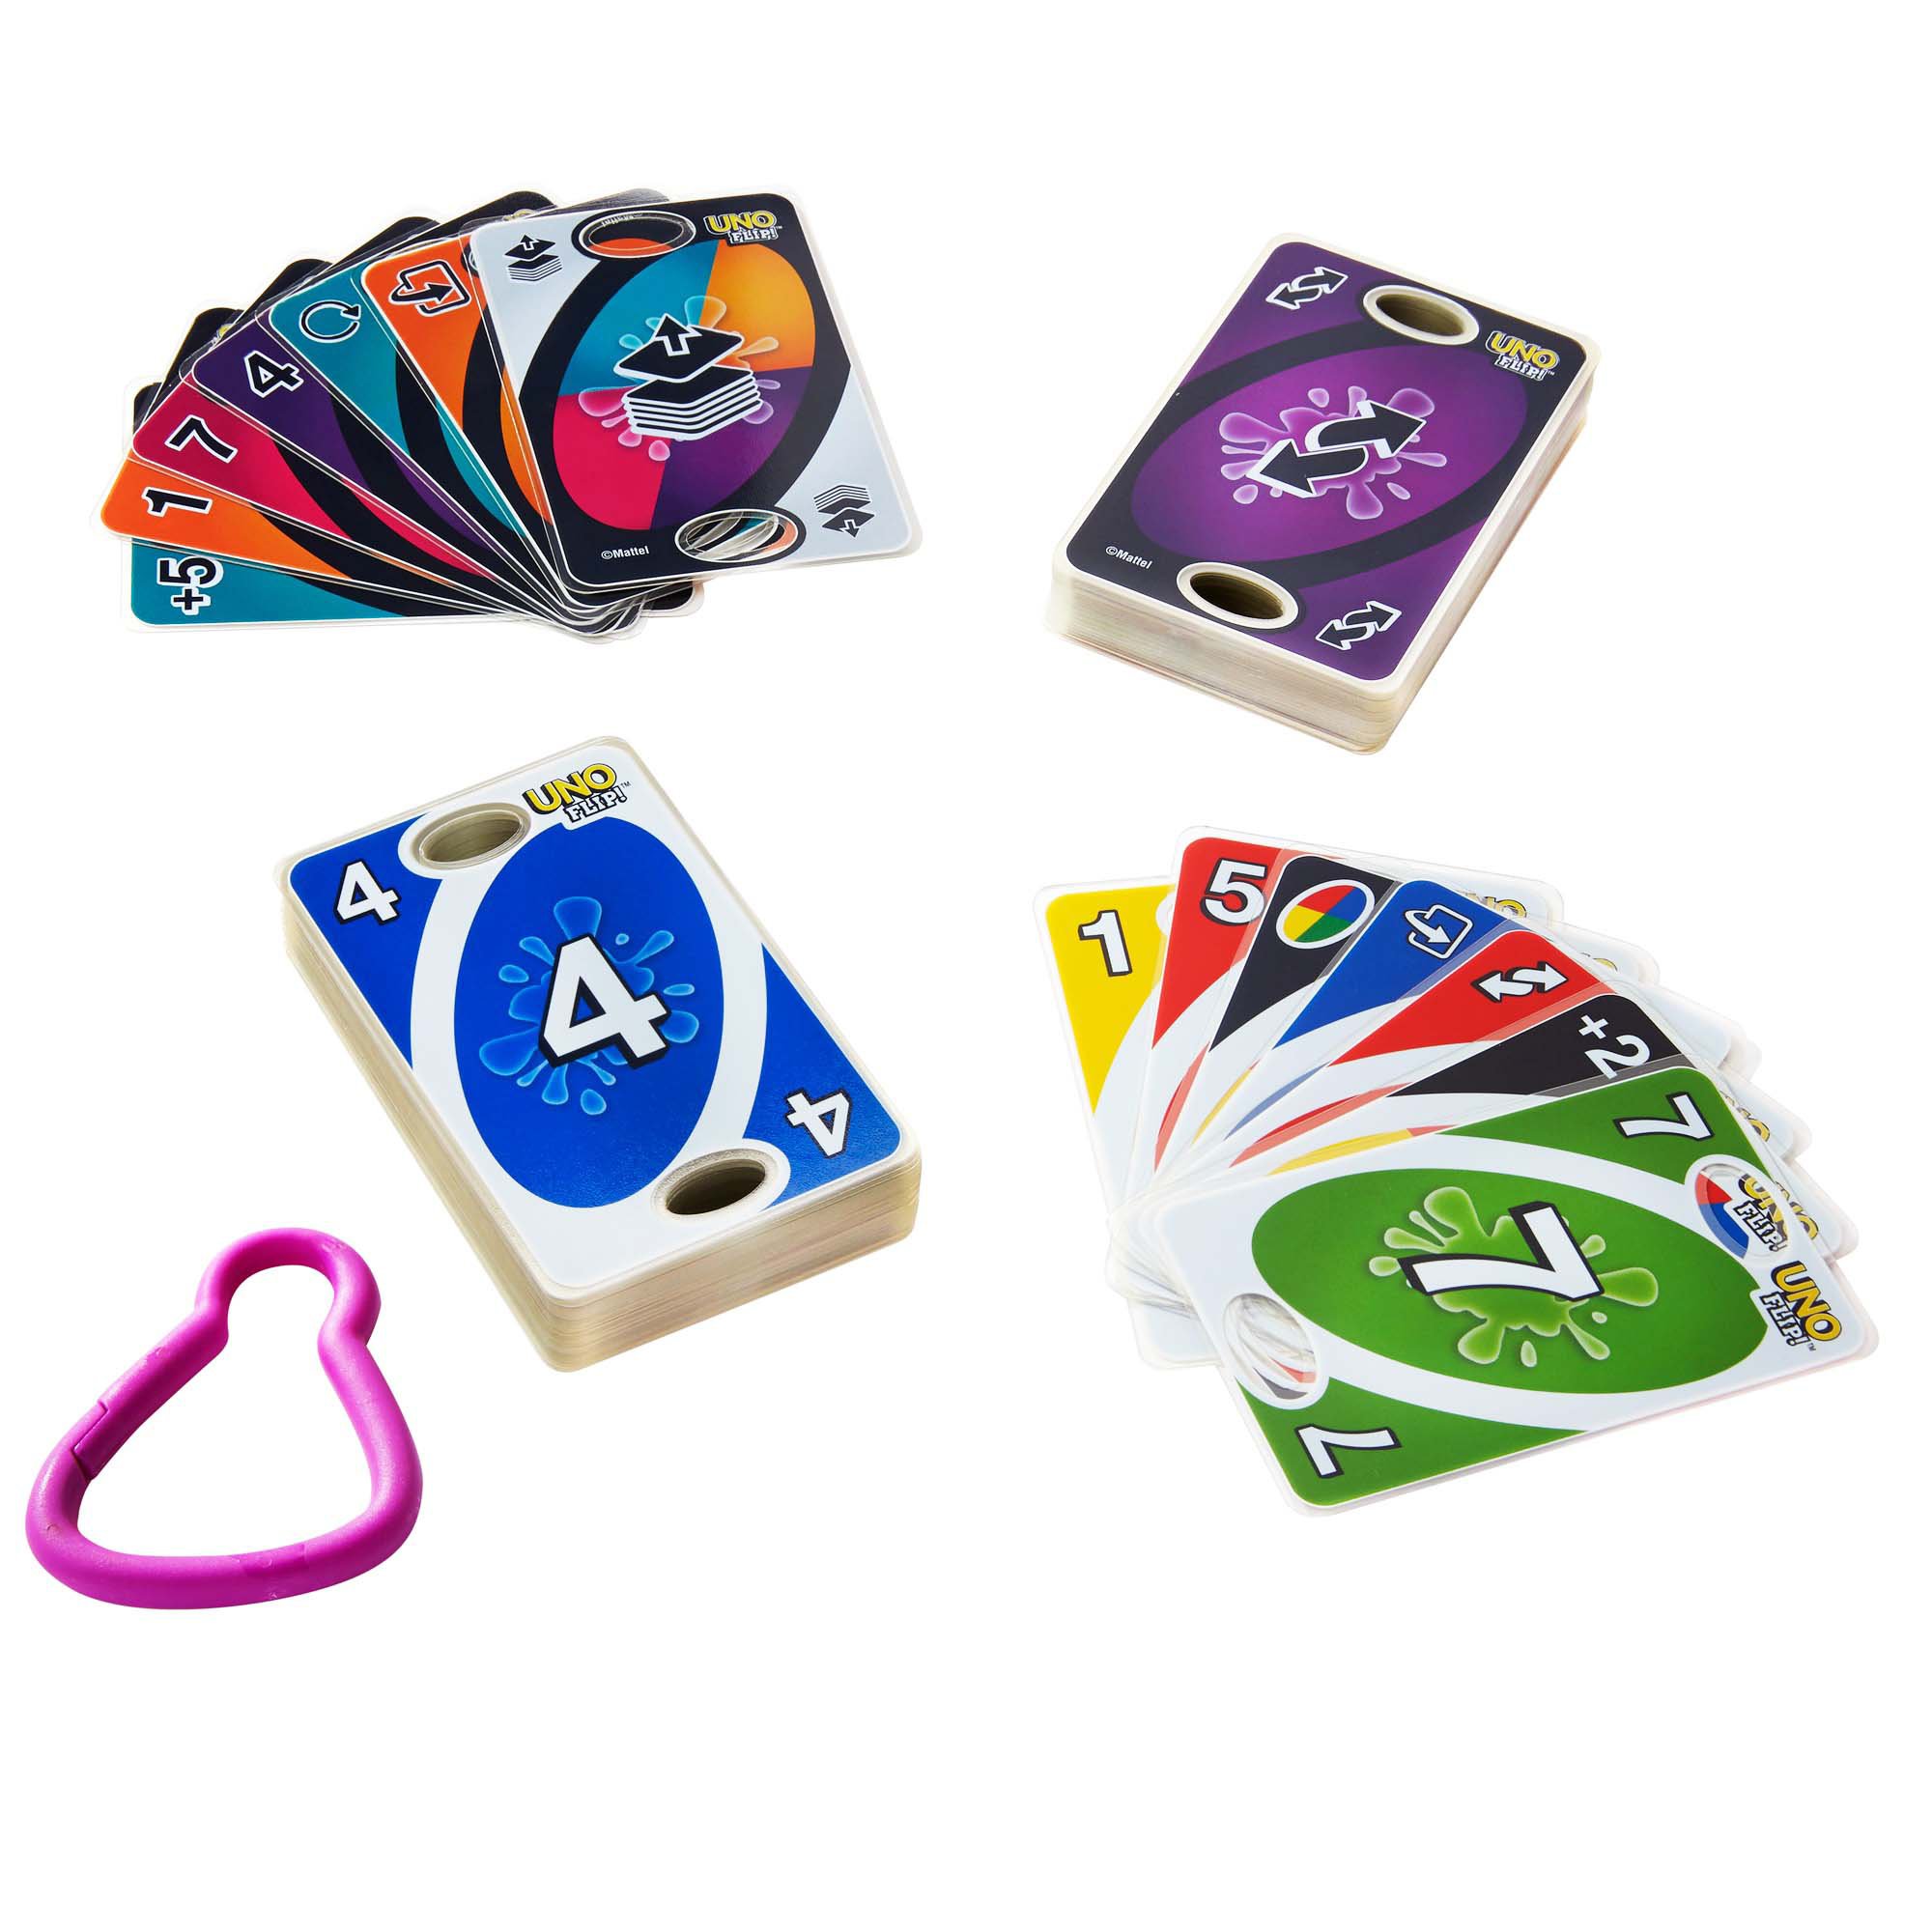 IsEasy Jogo de cartas Uno Jogos Mattel Wild Card Uno Flip Uno